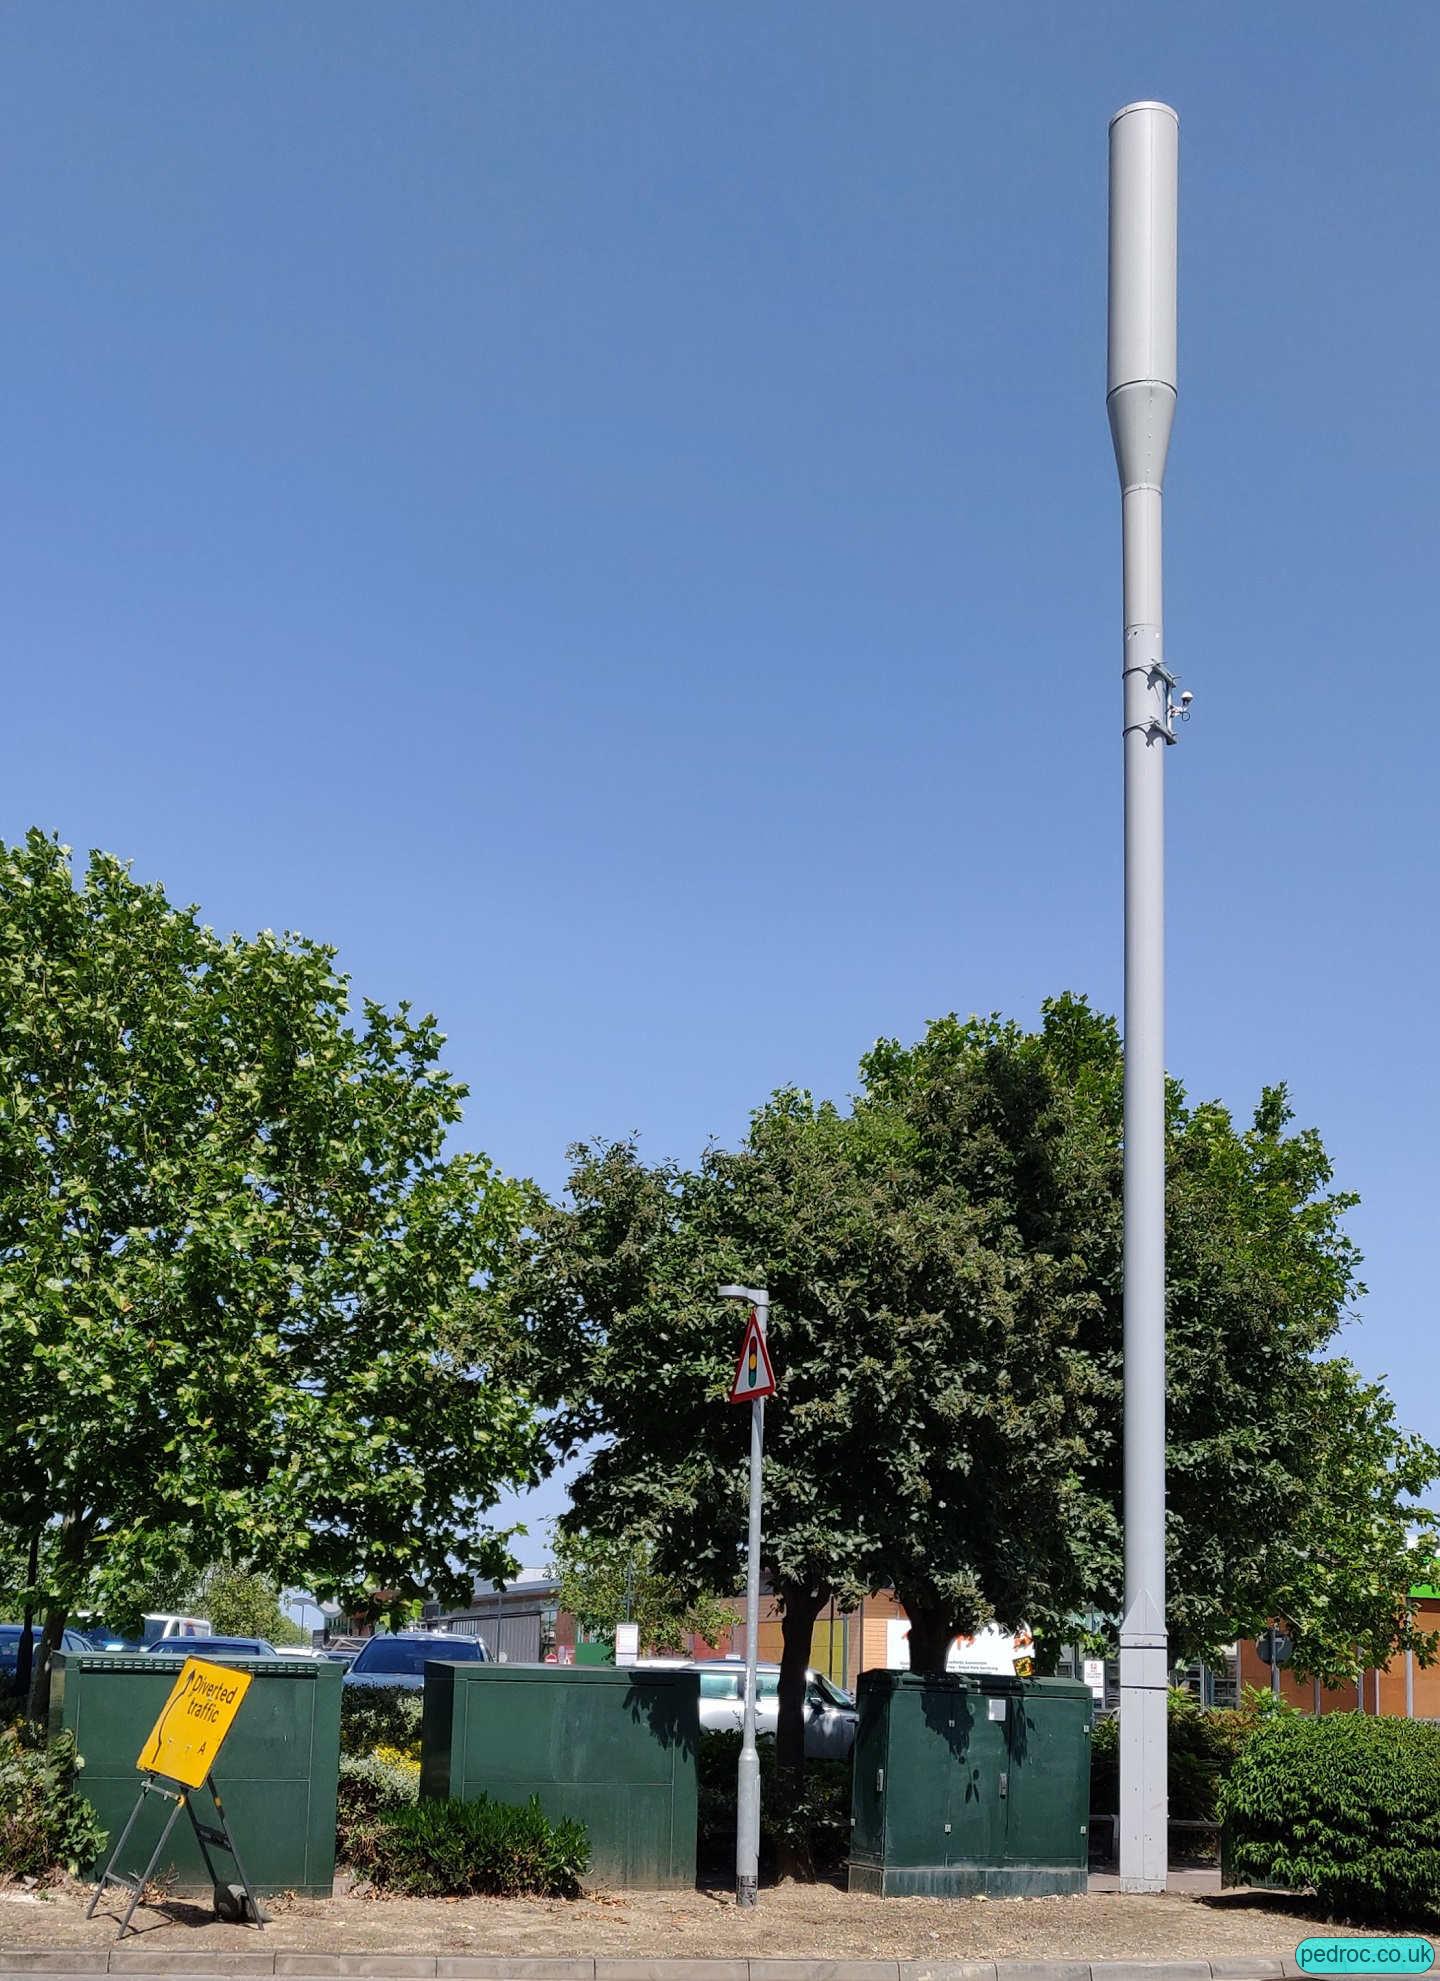 Cambridge Retail Park mast, Cambridge